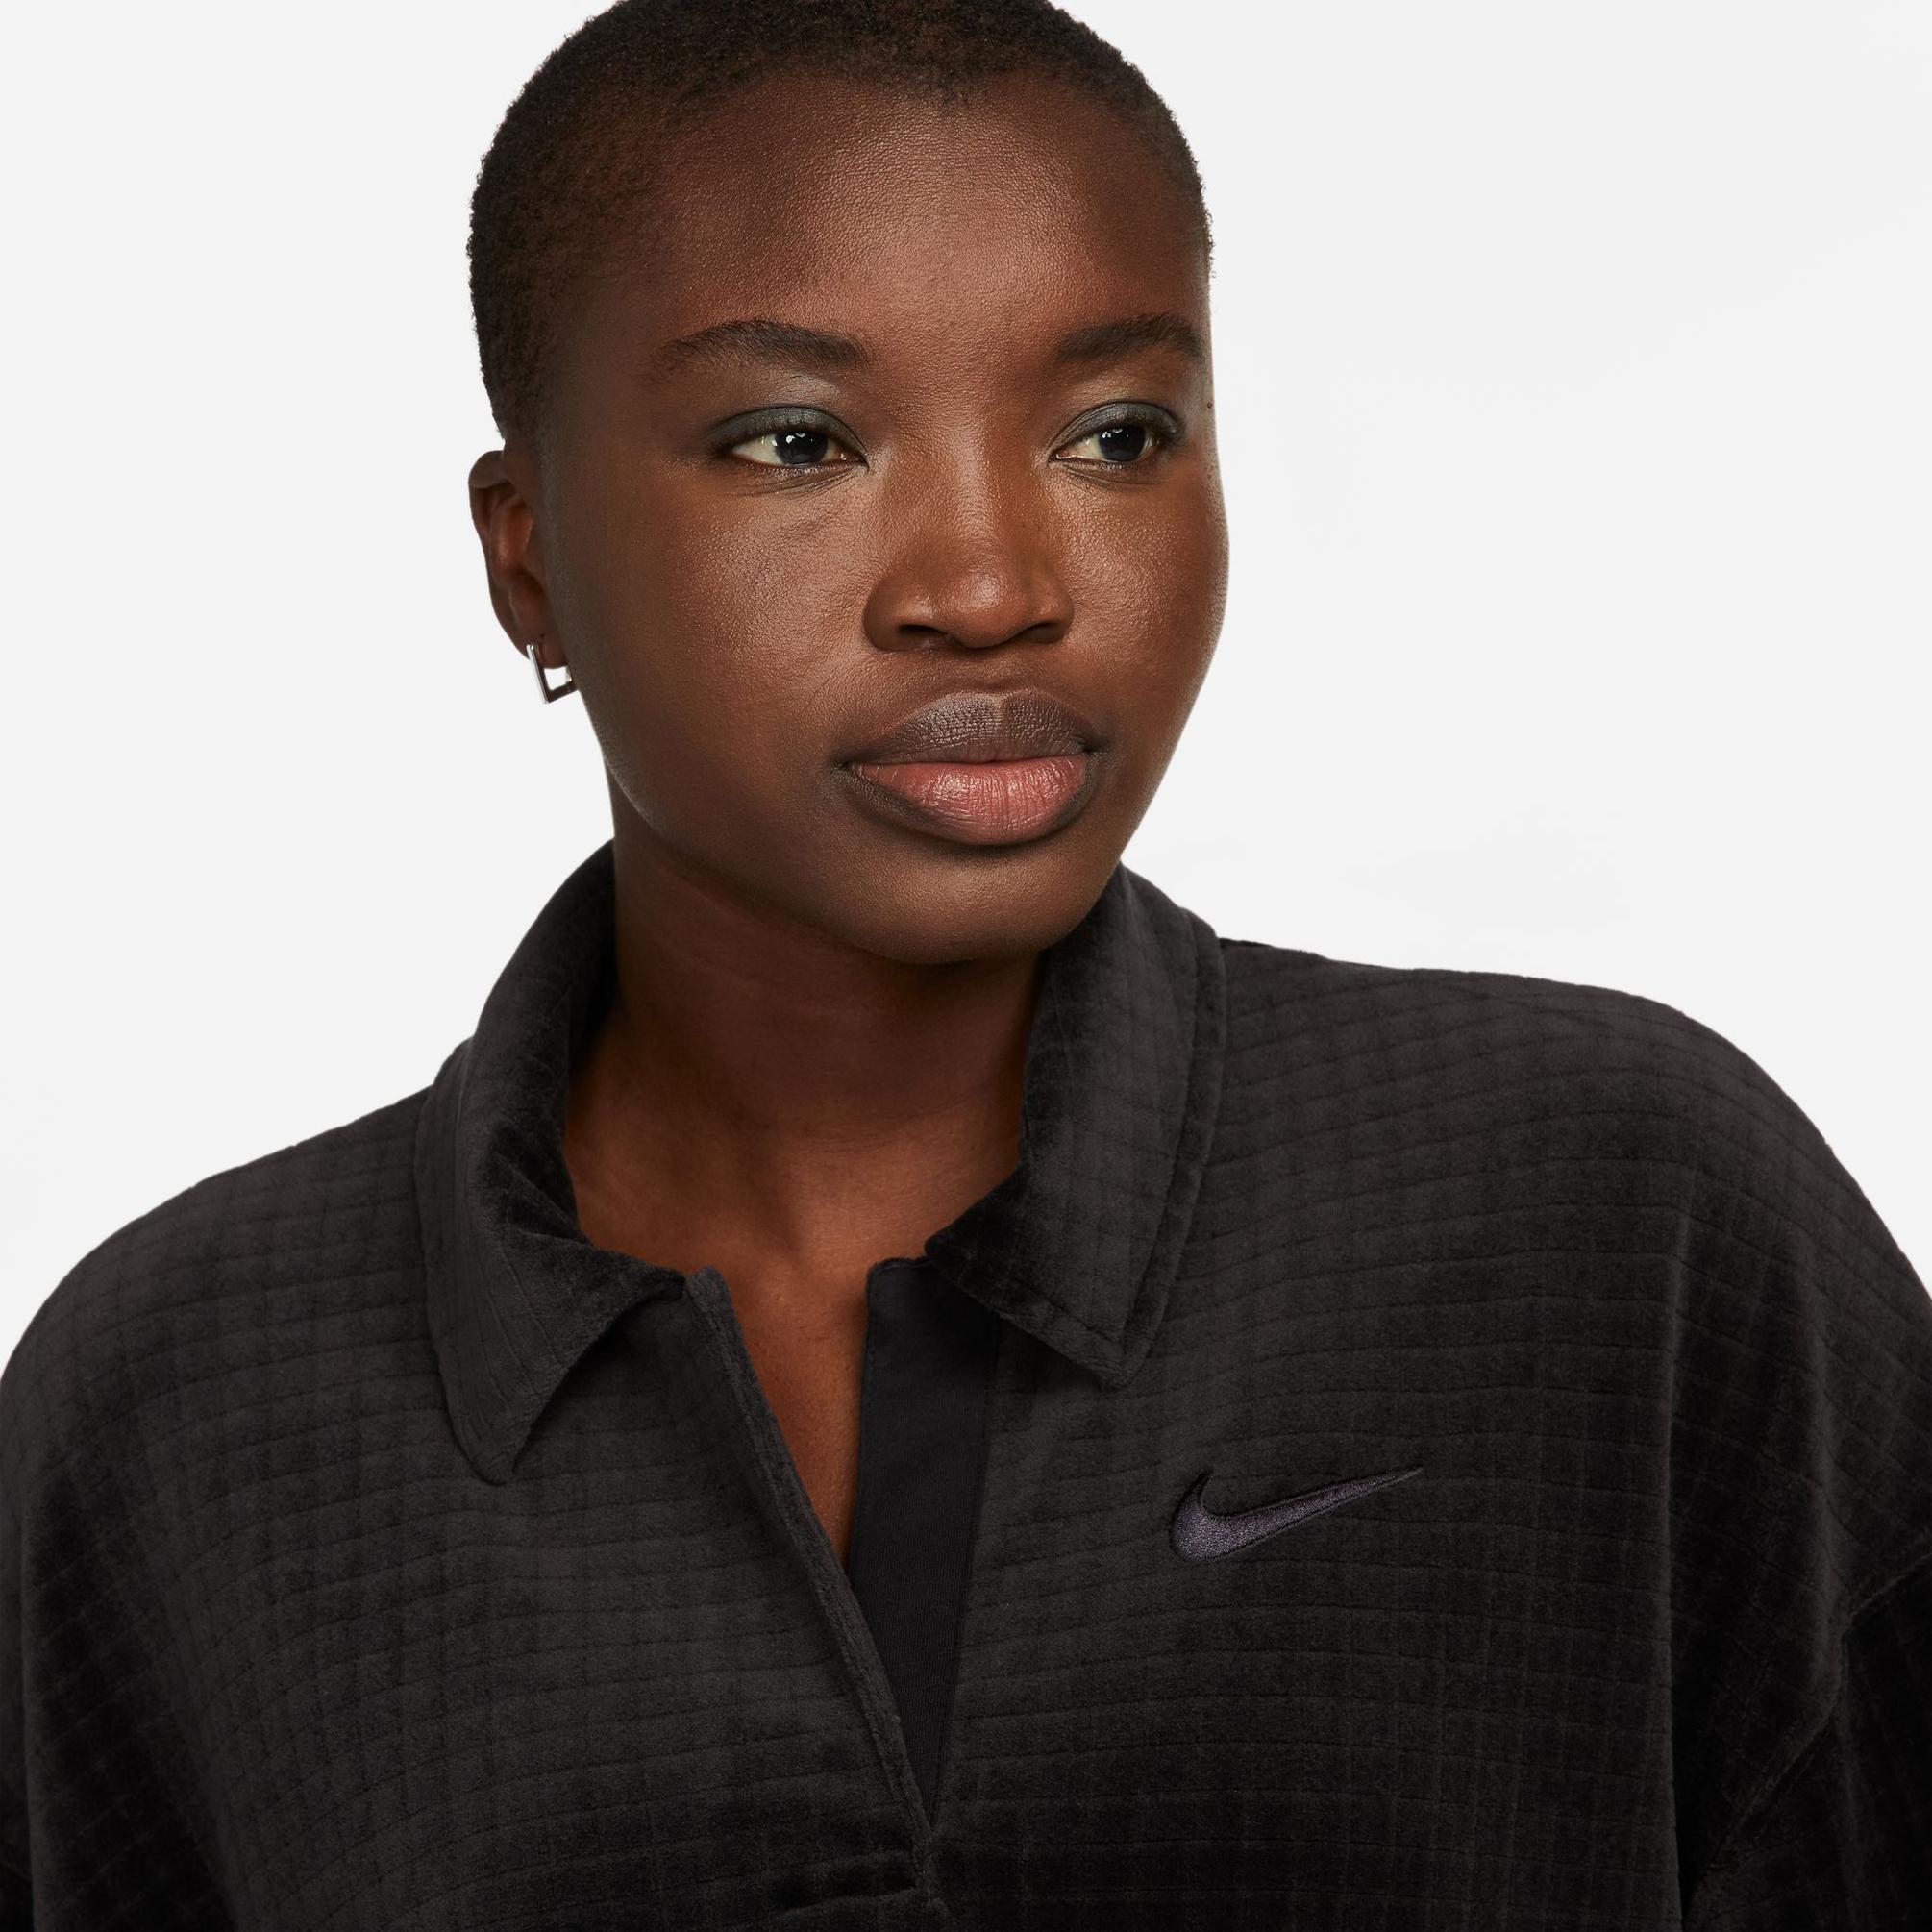  Nike Sportswear Velour Kadın Siyah Polo